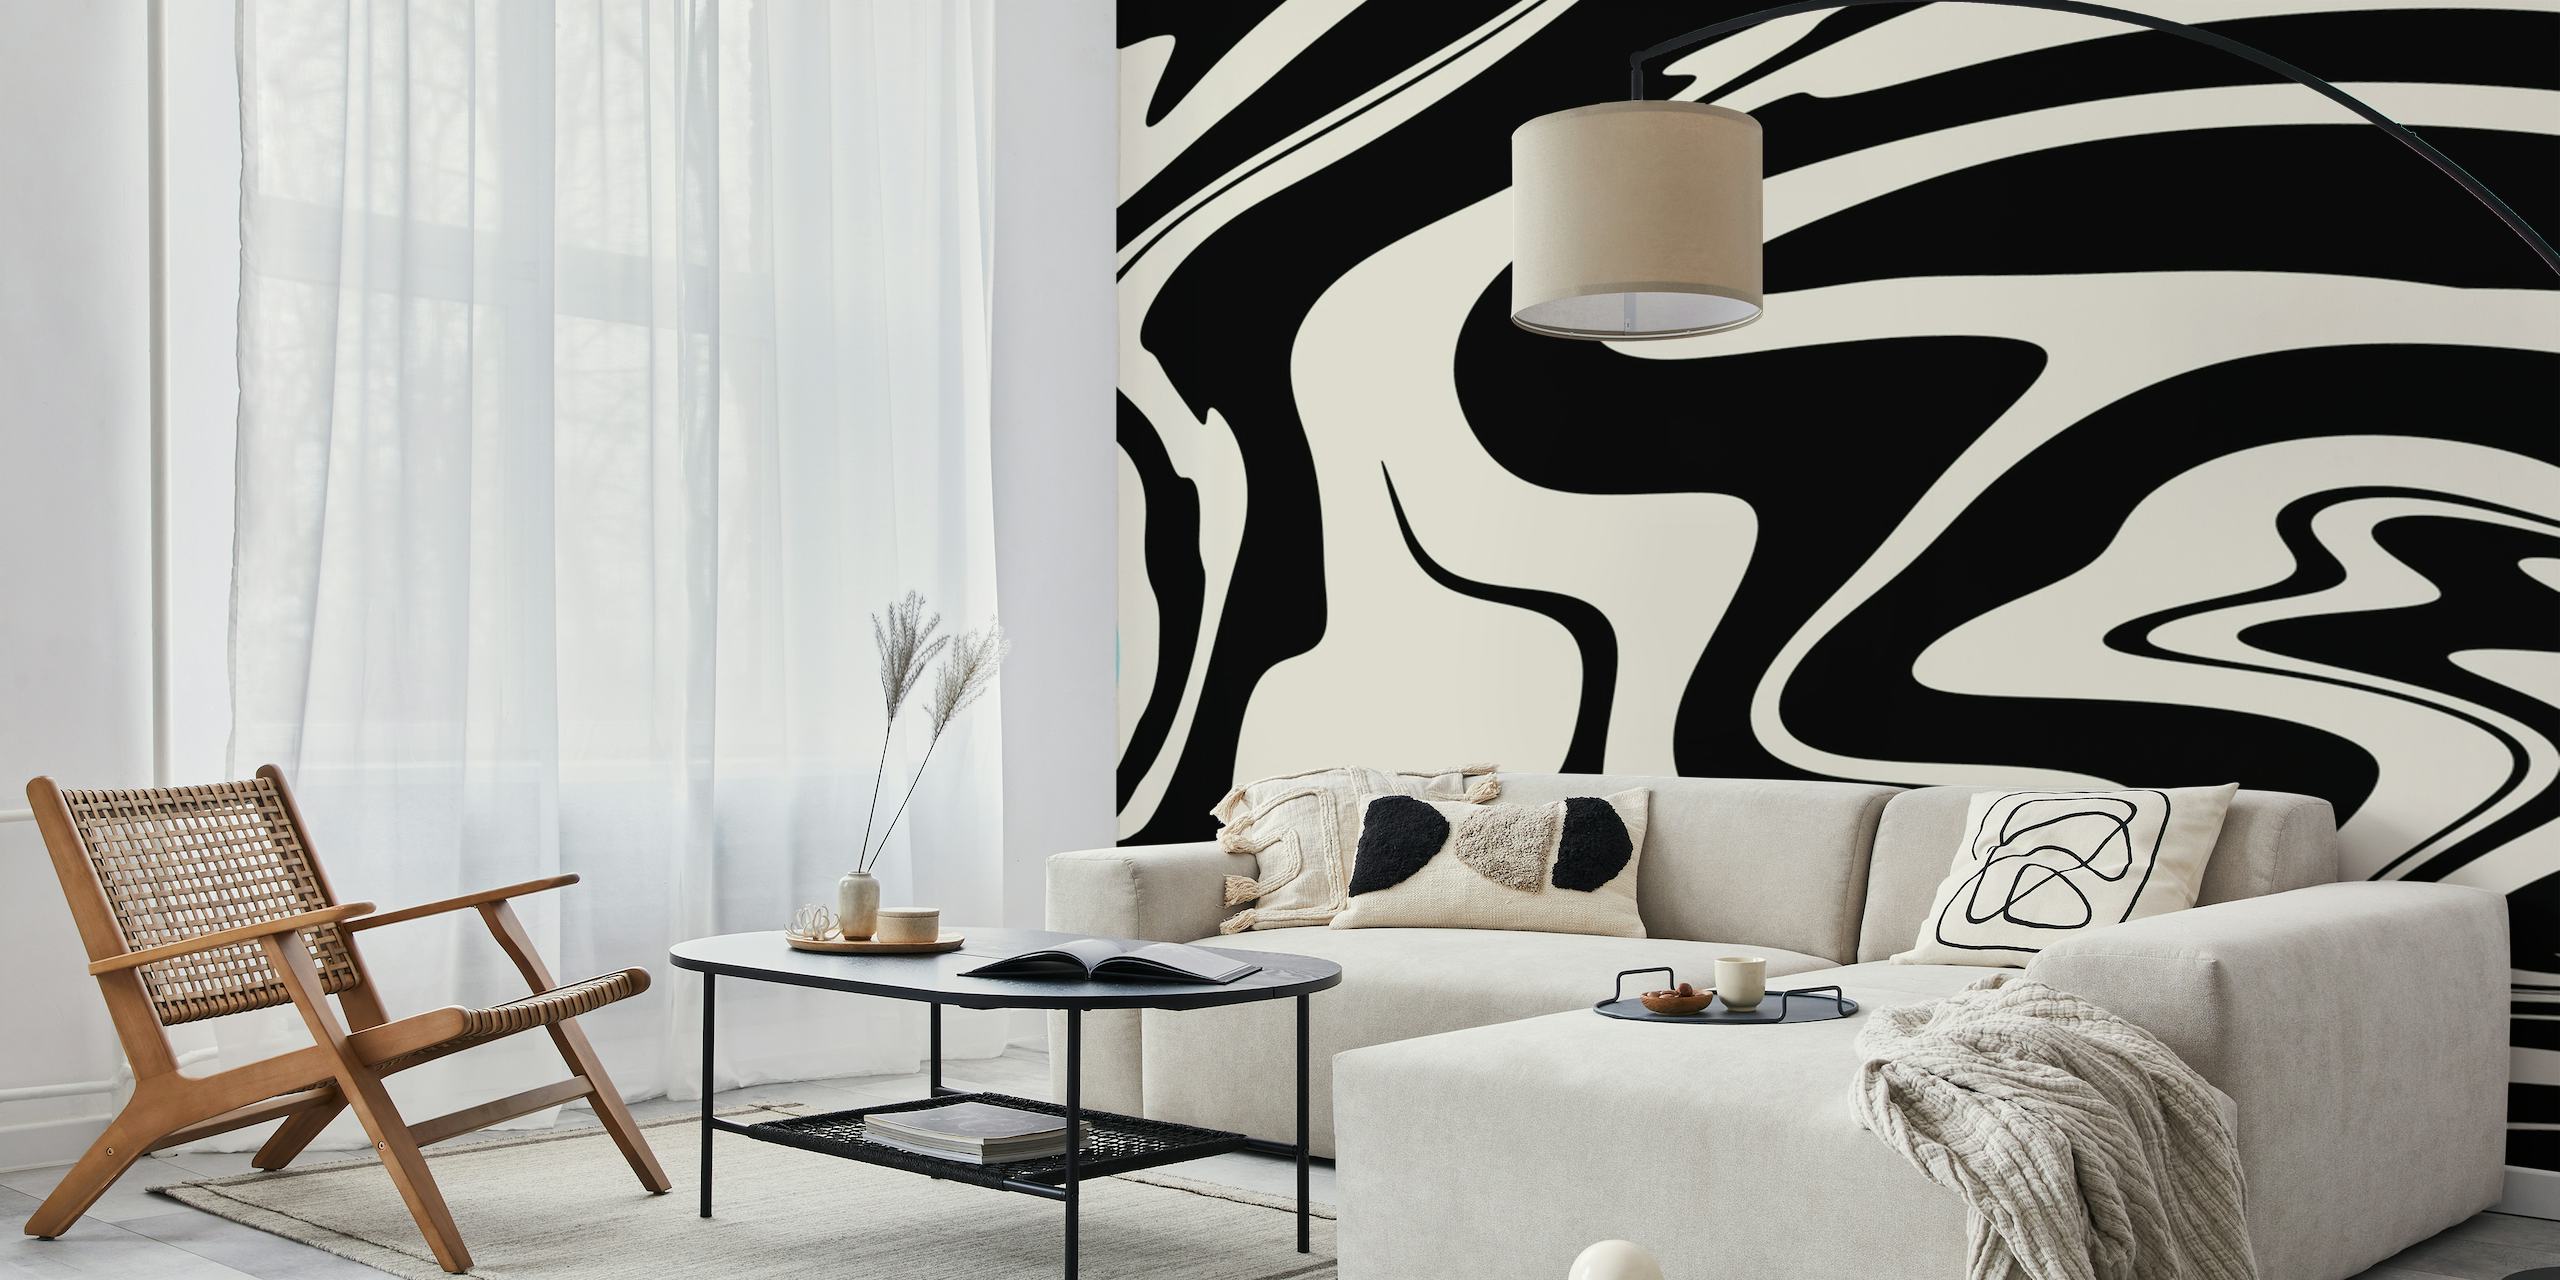 Design tourbillonnant abstrait noir et blanc rappelant le style rétro glam pour la décoration murale.